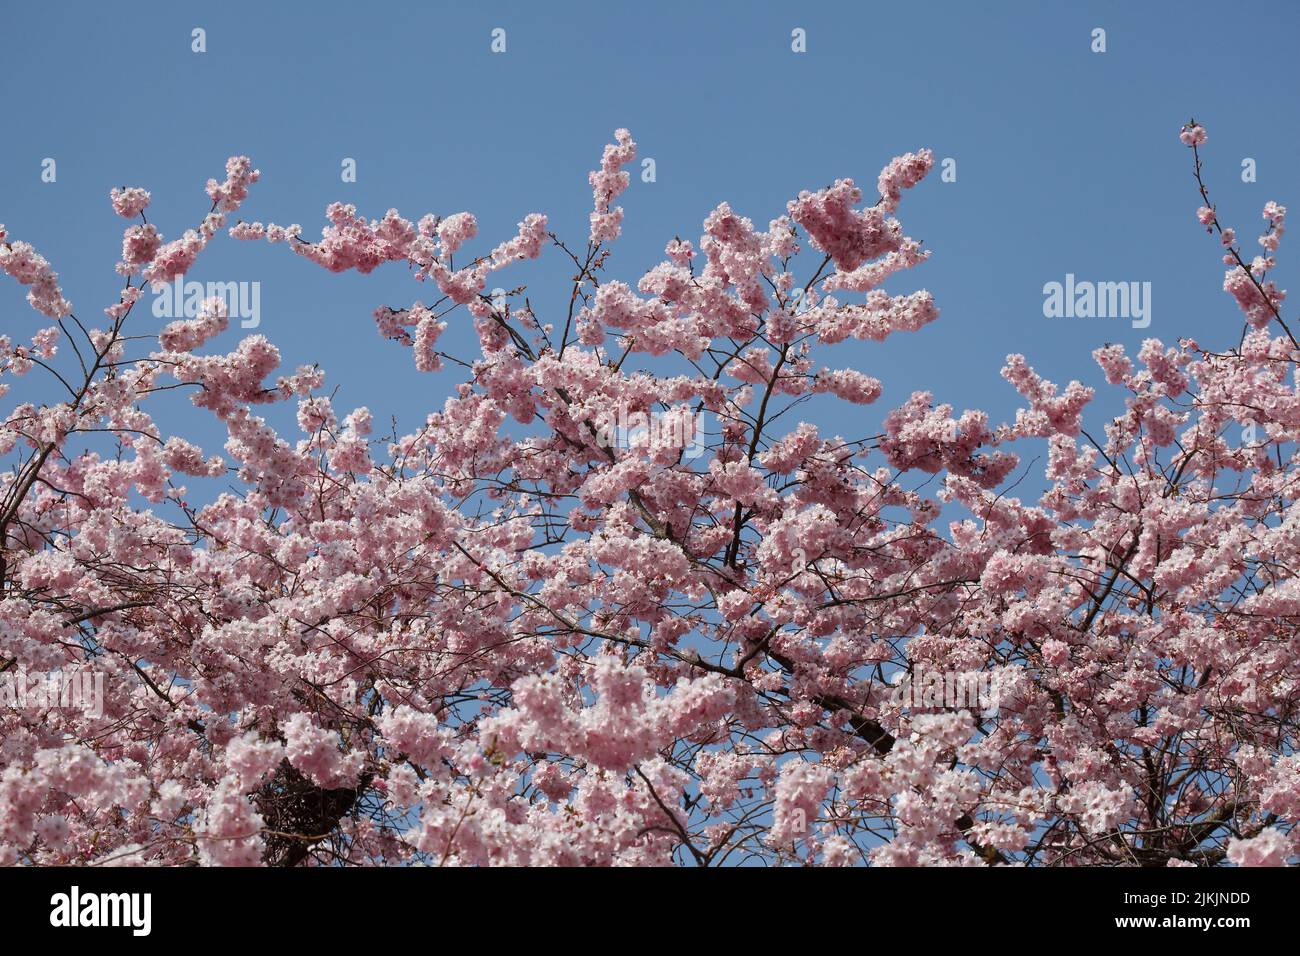 Rosa Kirschblüten auf  Baumzweigen, Blauer Himmel Stock Photo